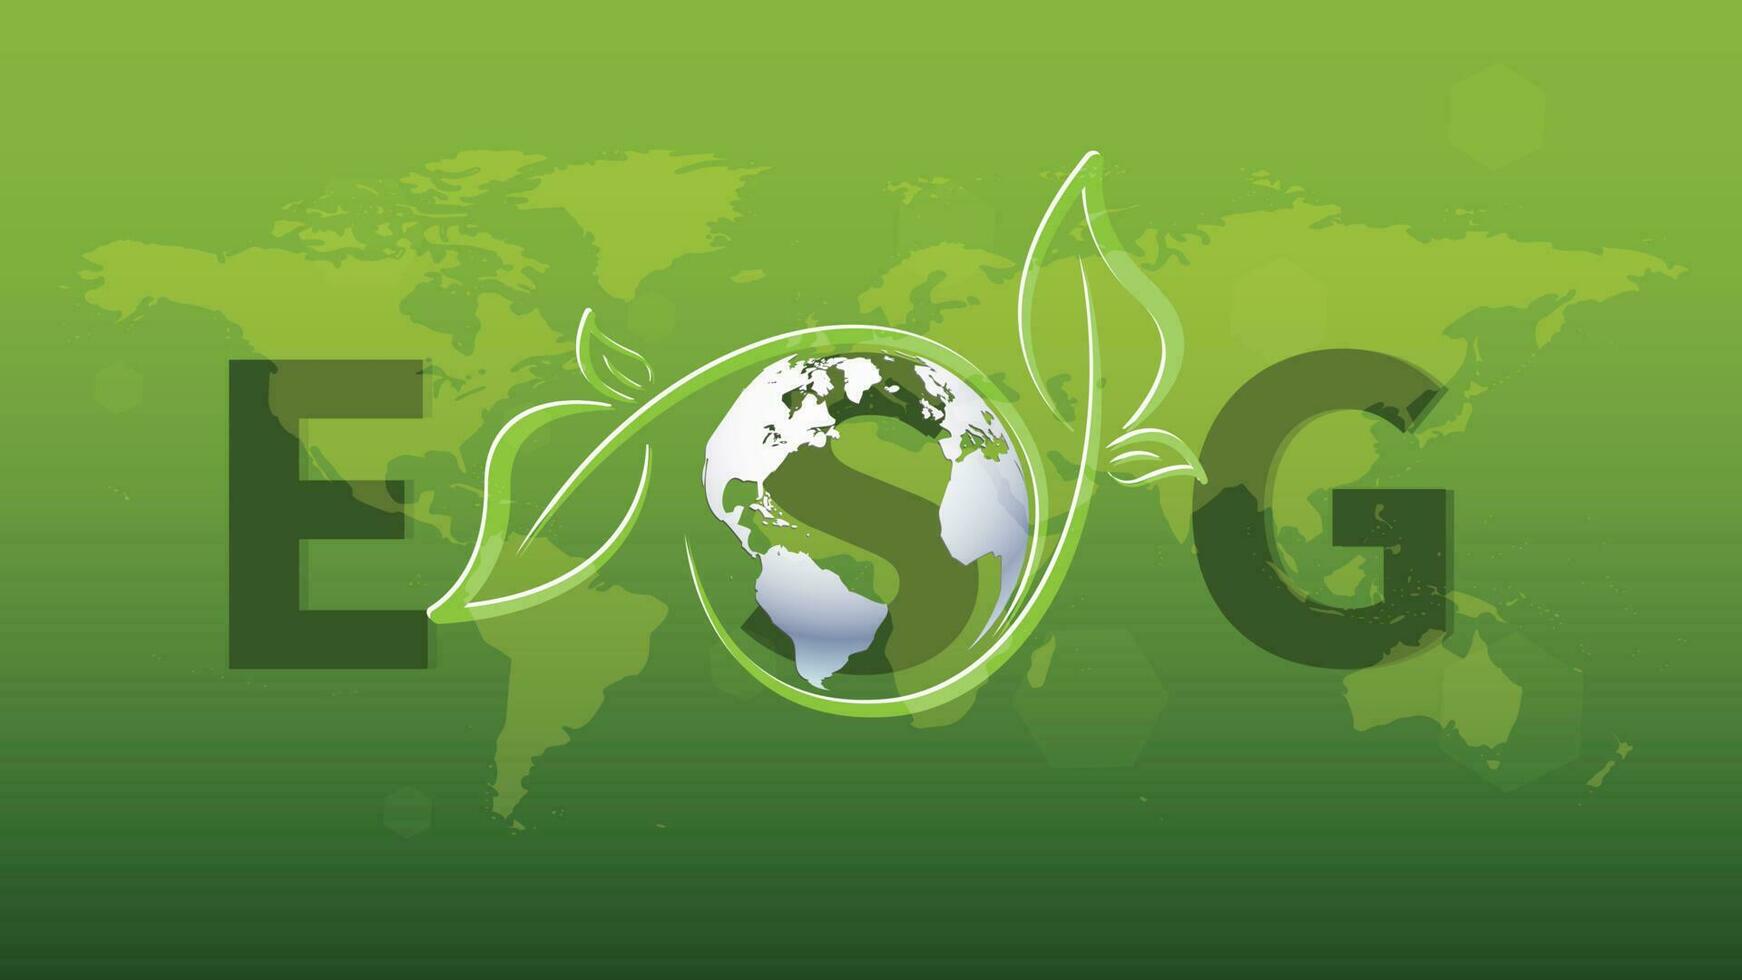 esg - milieu, sociaal en zakelijke bestuur banier informatie technologie groen bedrijf icoon hernieuwbaar omgeving, samenleving, vector